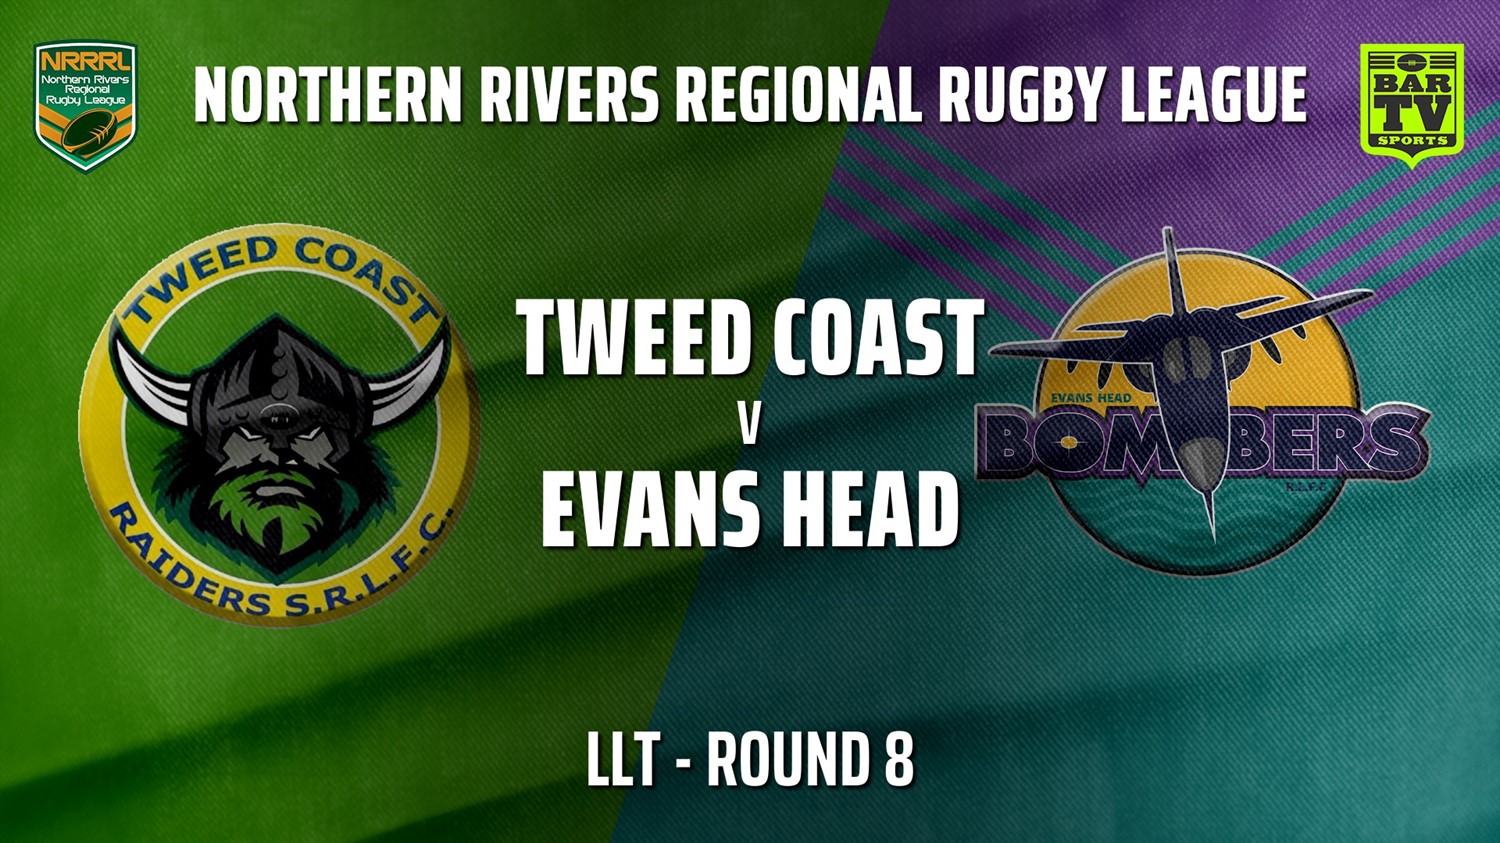 210627-Northern Rivers Round 8 - LLT - Tweed Coast Raiders v Evans Head Bombers Slate Image